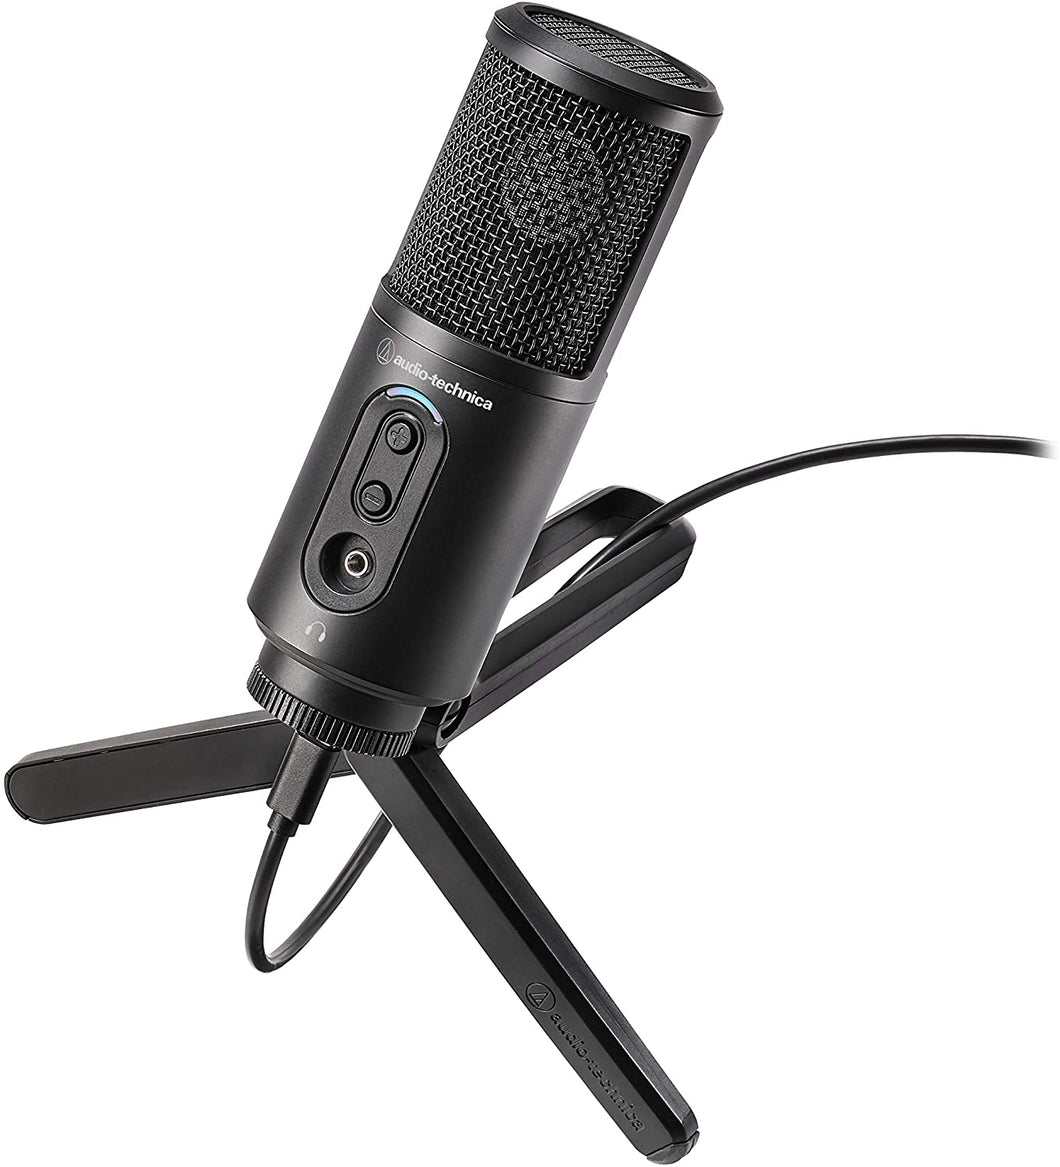 Audio-Technica ATR-2500x USB Microphone միկրոֆոն